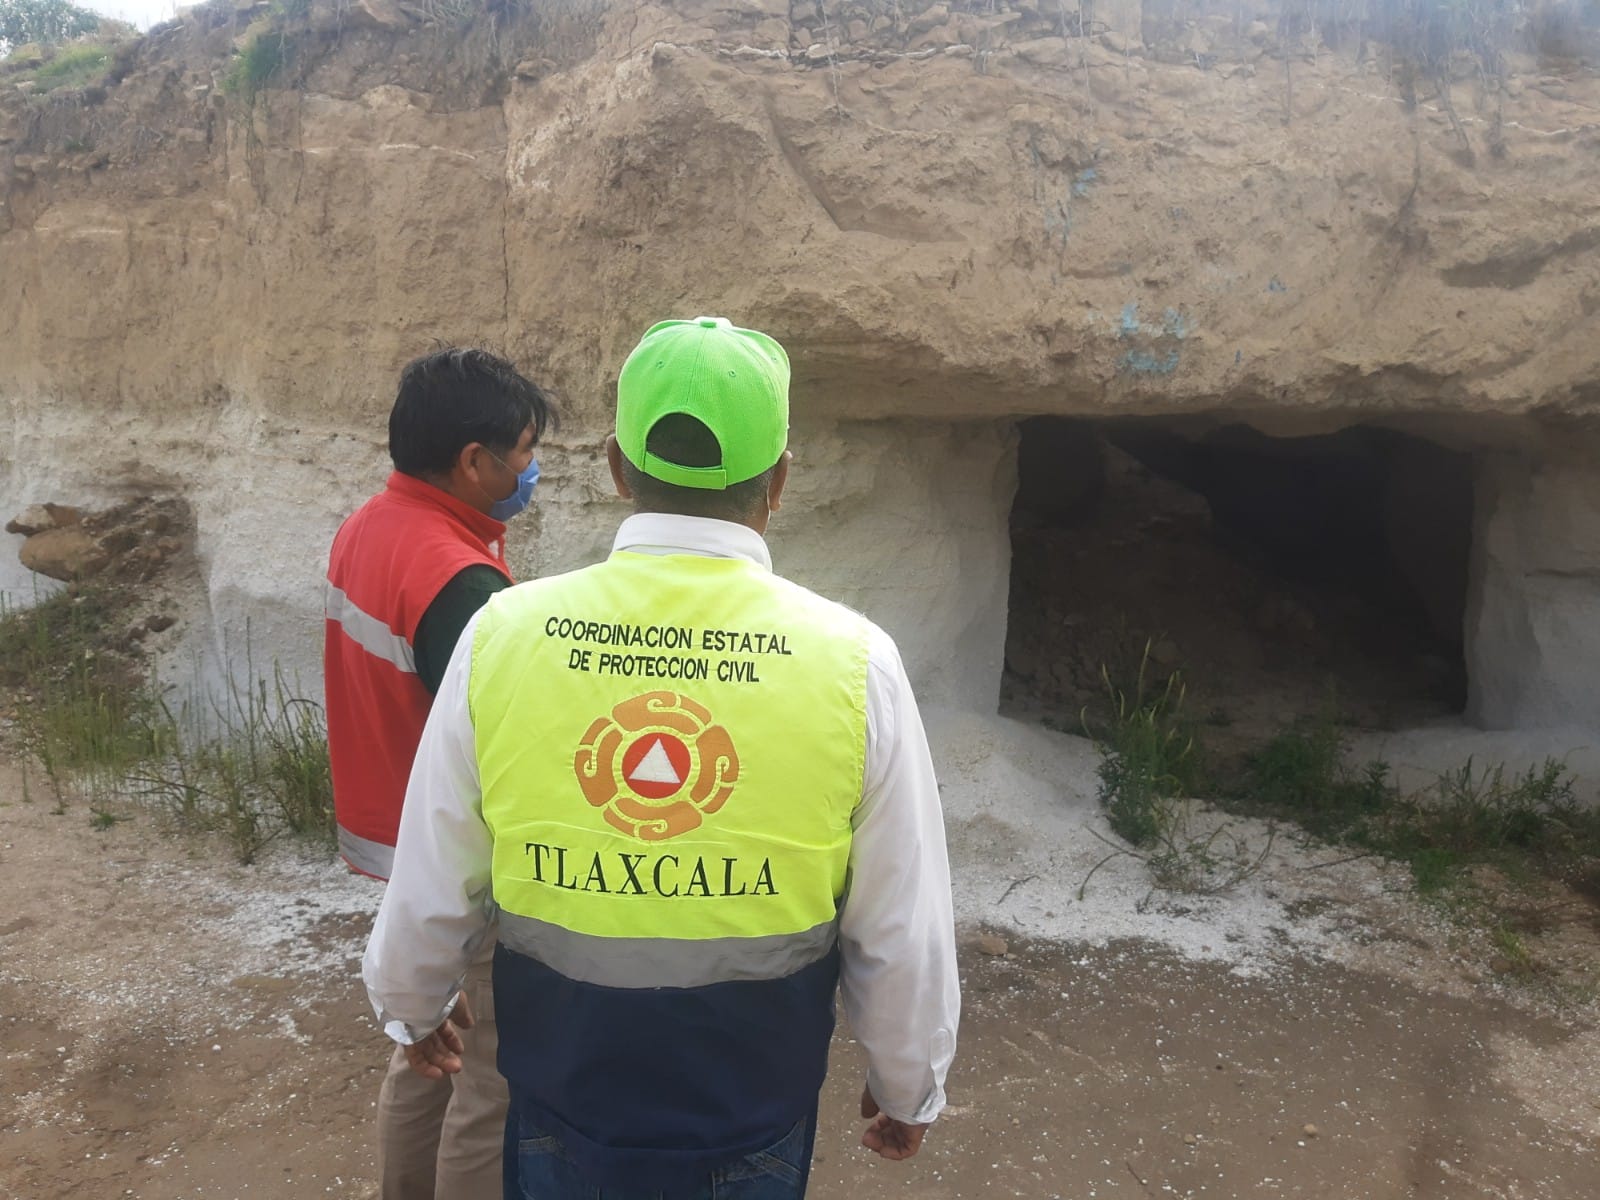 Hundimiento de terreno en Xaloztoc, sin riesgo: CEPC